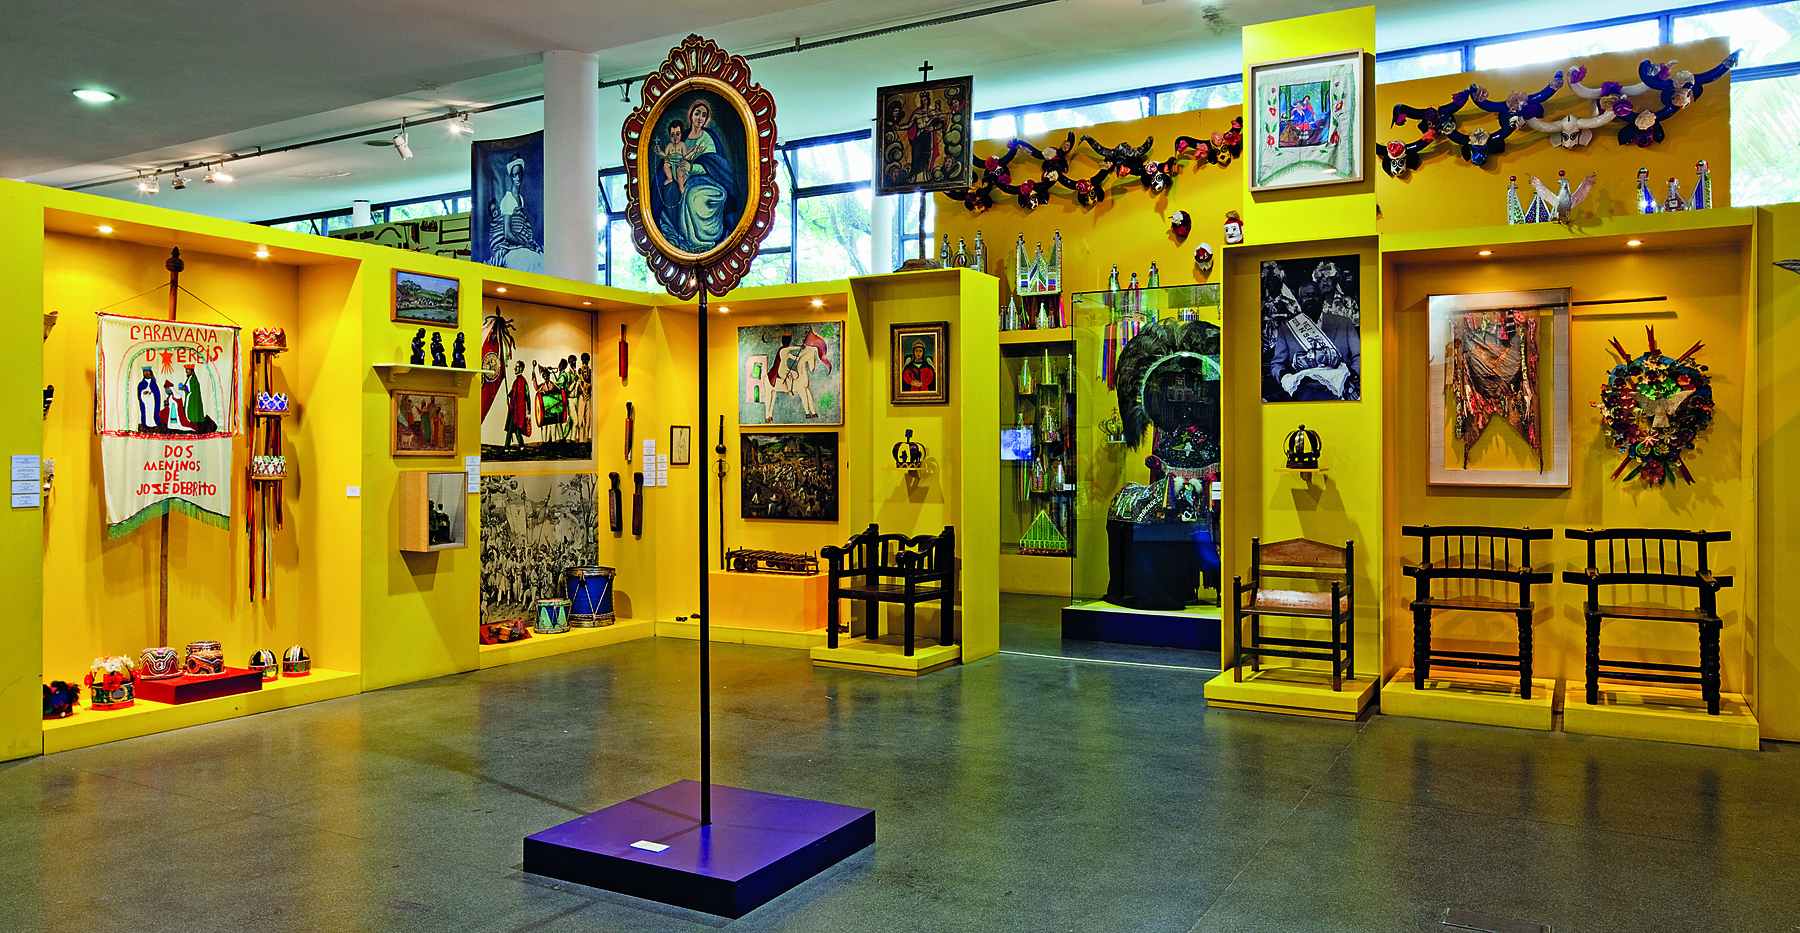 Fotografia. Uma das salas do Museu Afro Brasil. Em primeiro plano, um retrato com moldura arredondada e dourada suspenso em um pedestal com haste fina. Em segundo plano, prateleiras amarelas, com adereços e objetos pendurados.